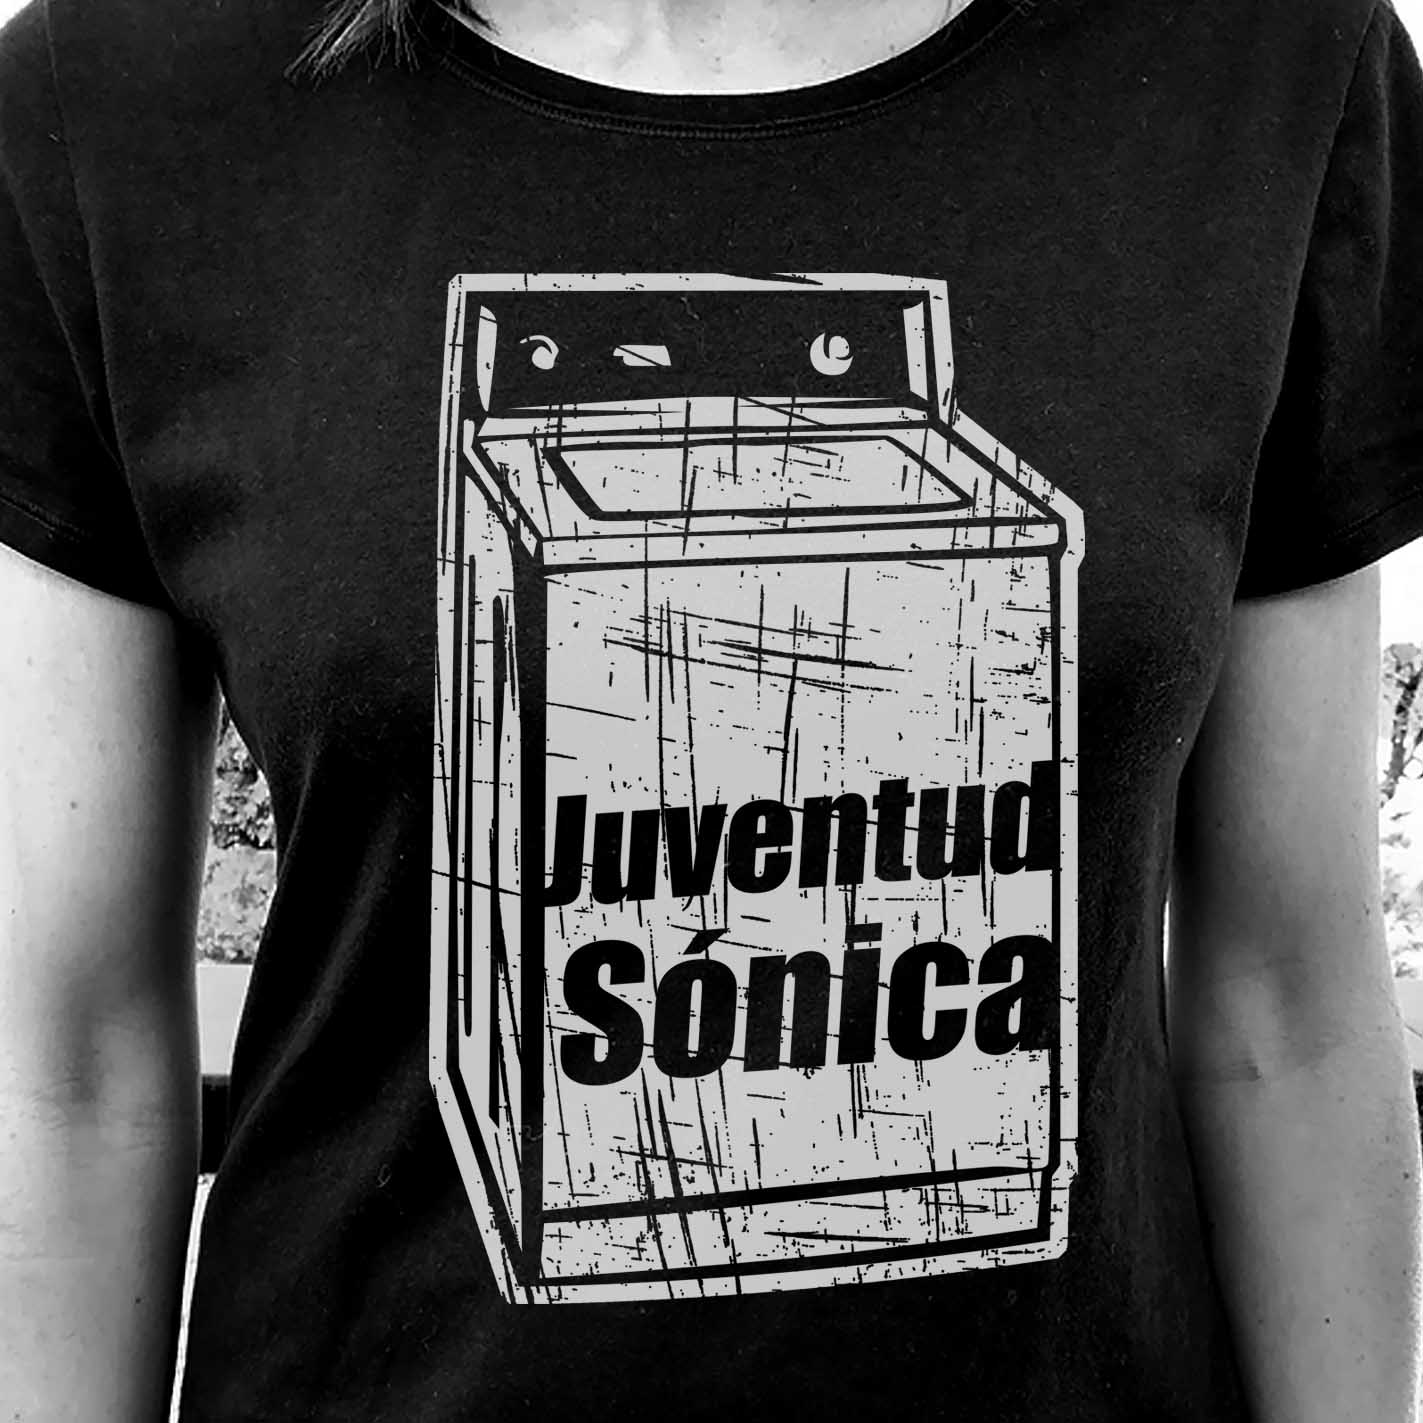 Camiseta de los Sonic Youth